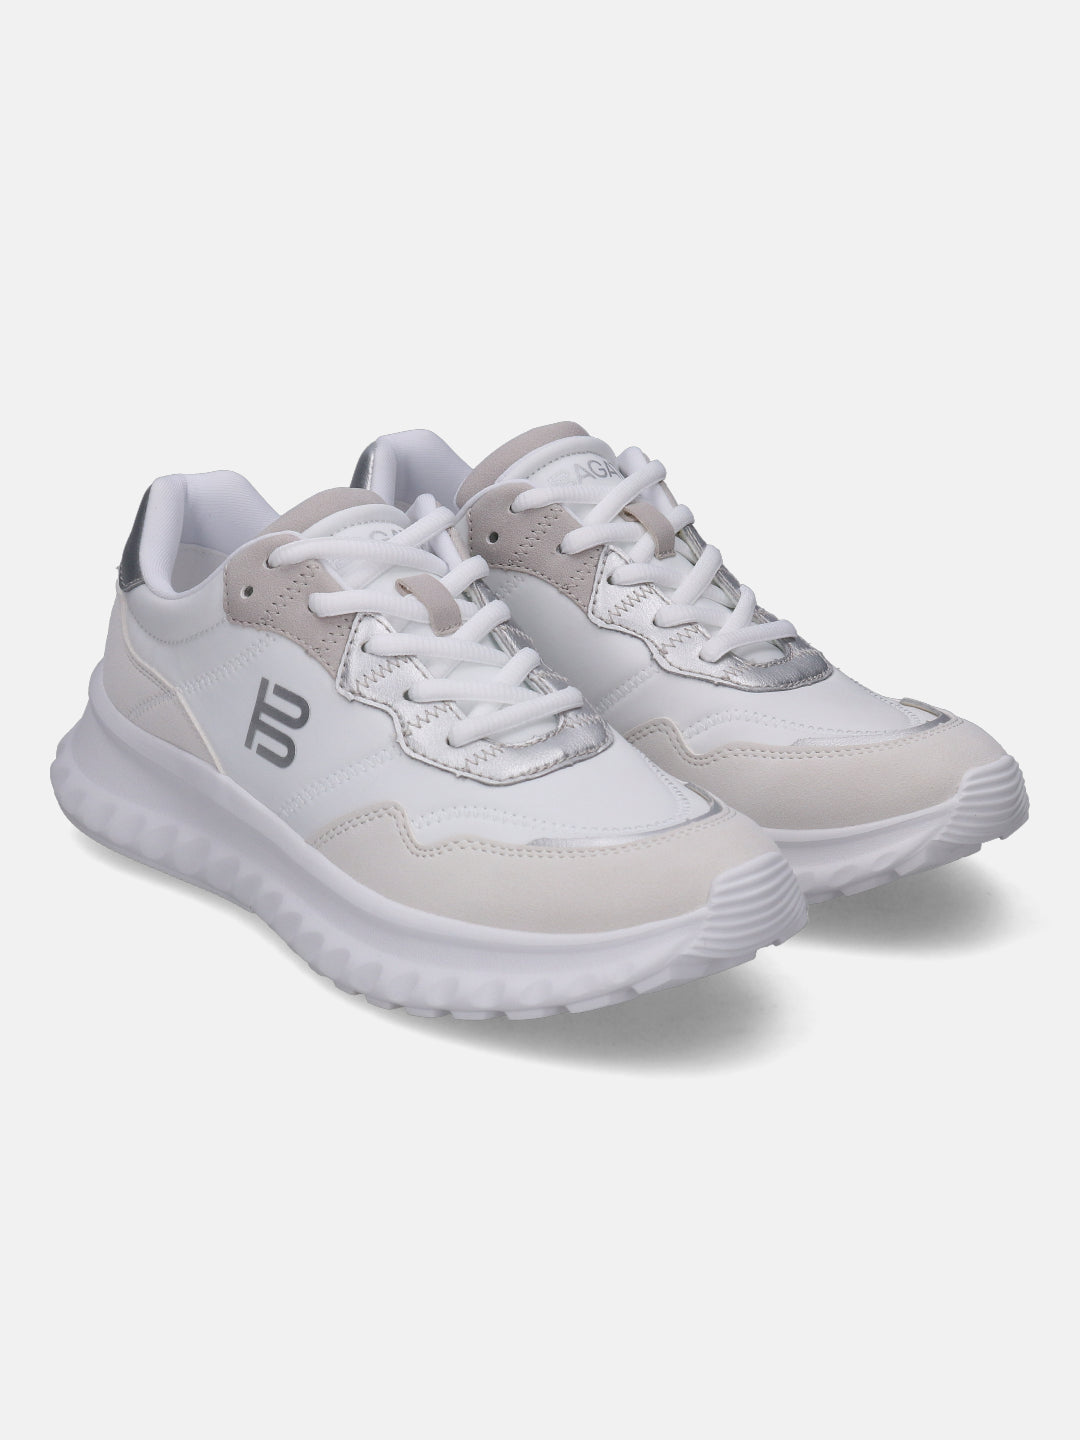 Lecce White & Silver Sneakers - BAGATT